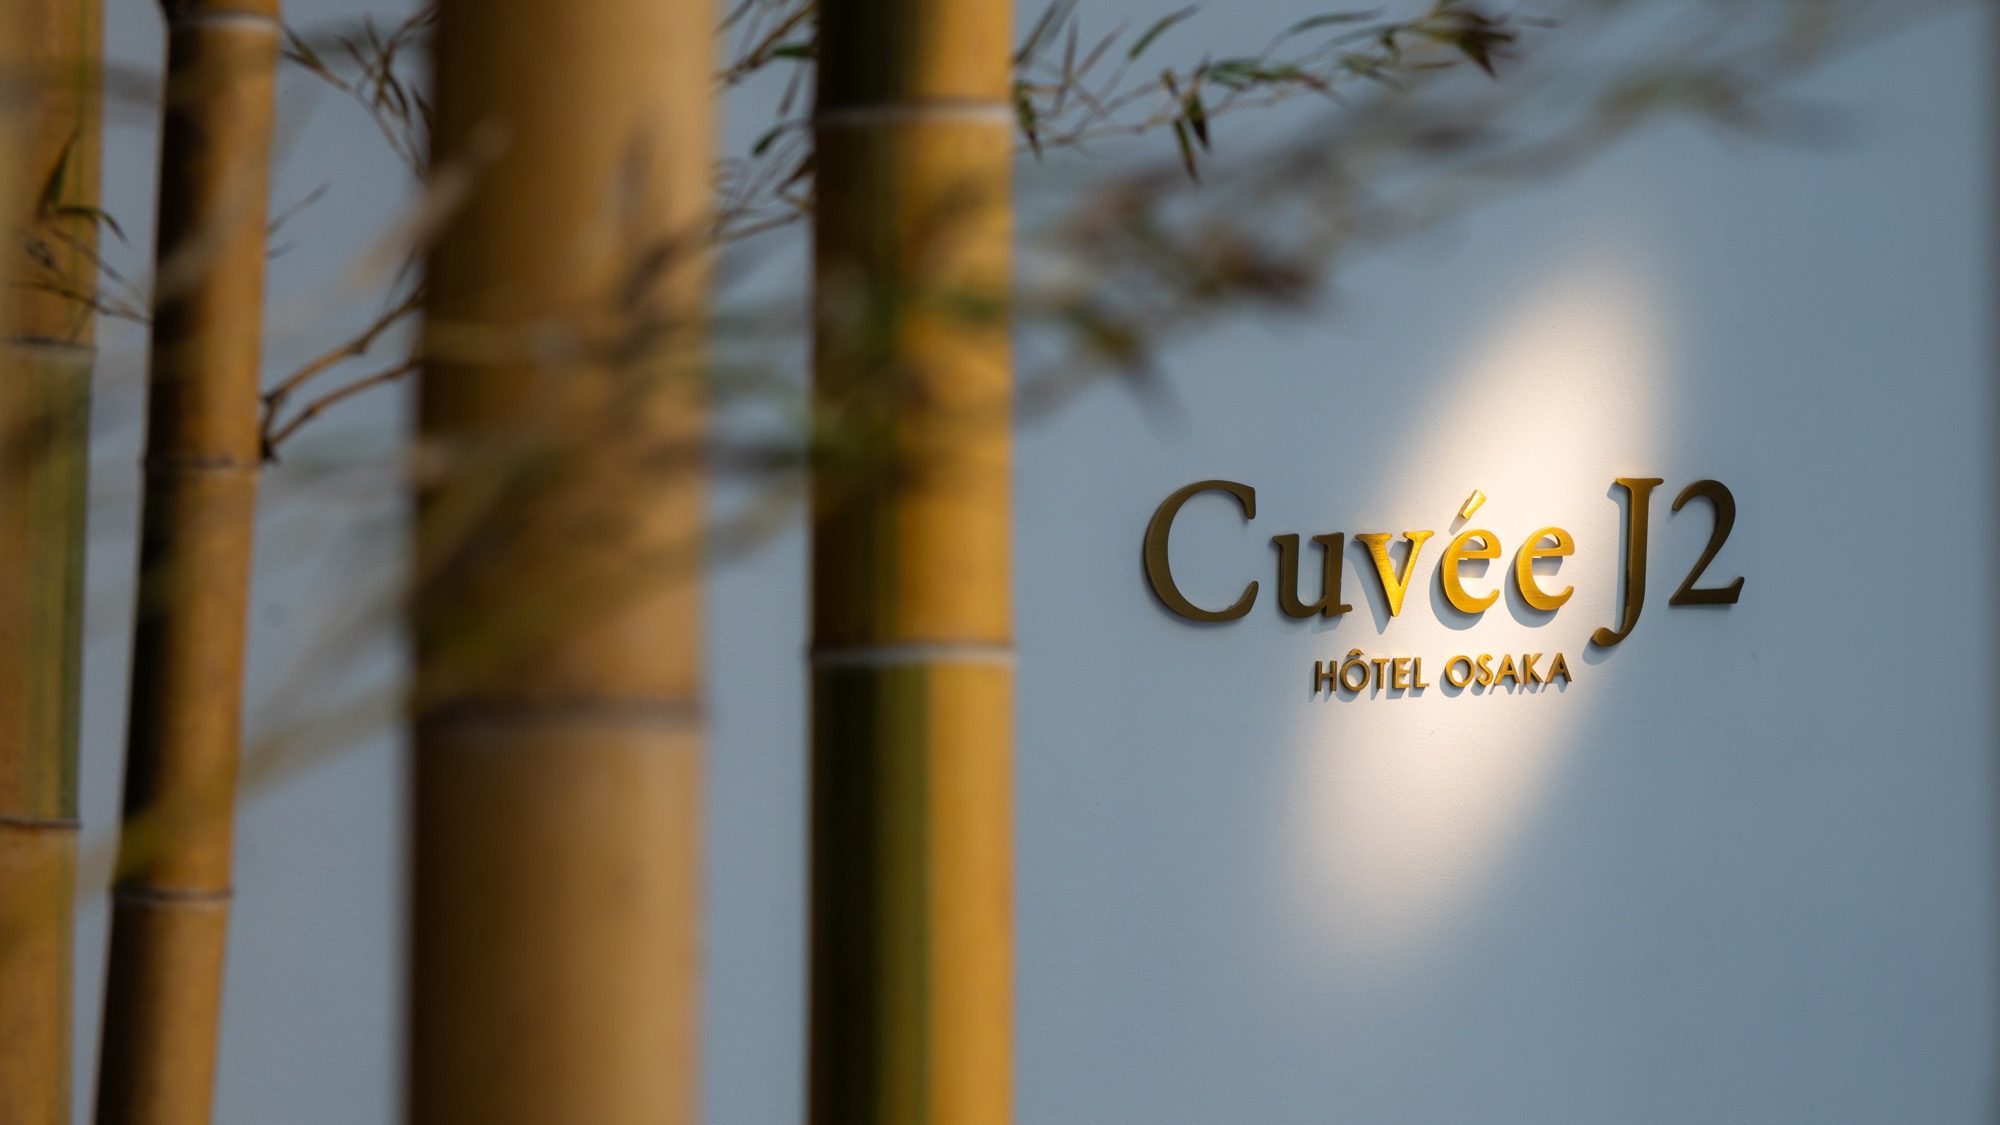 Cuvee J2 Hotel Osaka by 溫故知新